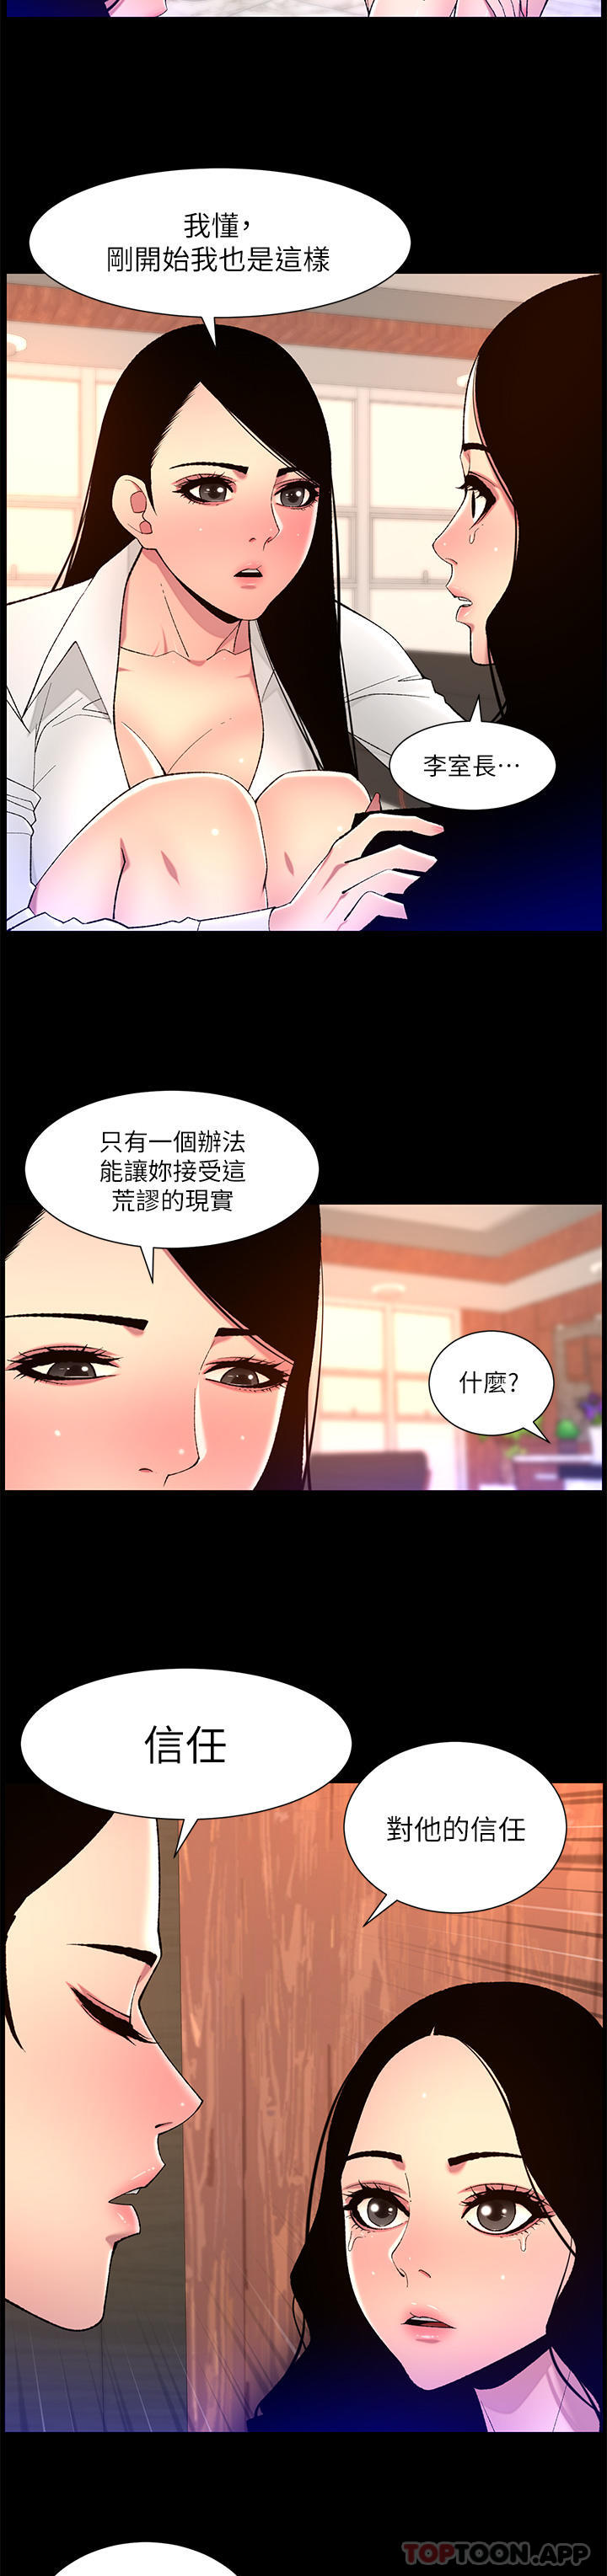 韩国污漫画 帝王App 第68话-把我弄湿就得负责 17